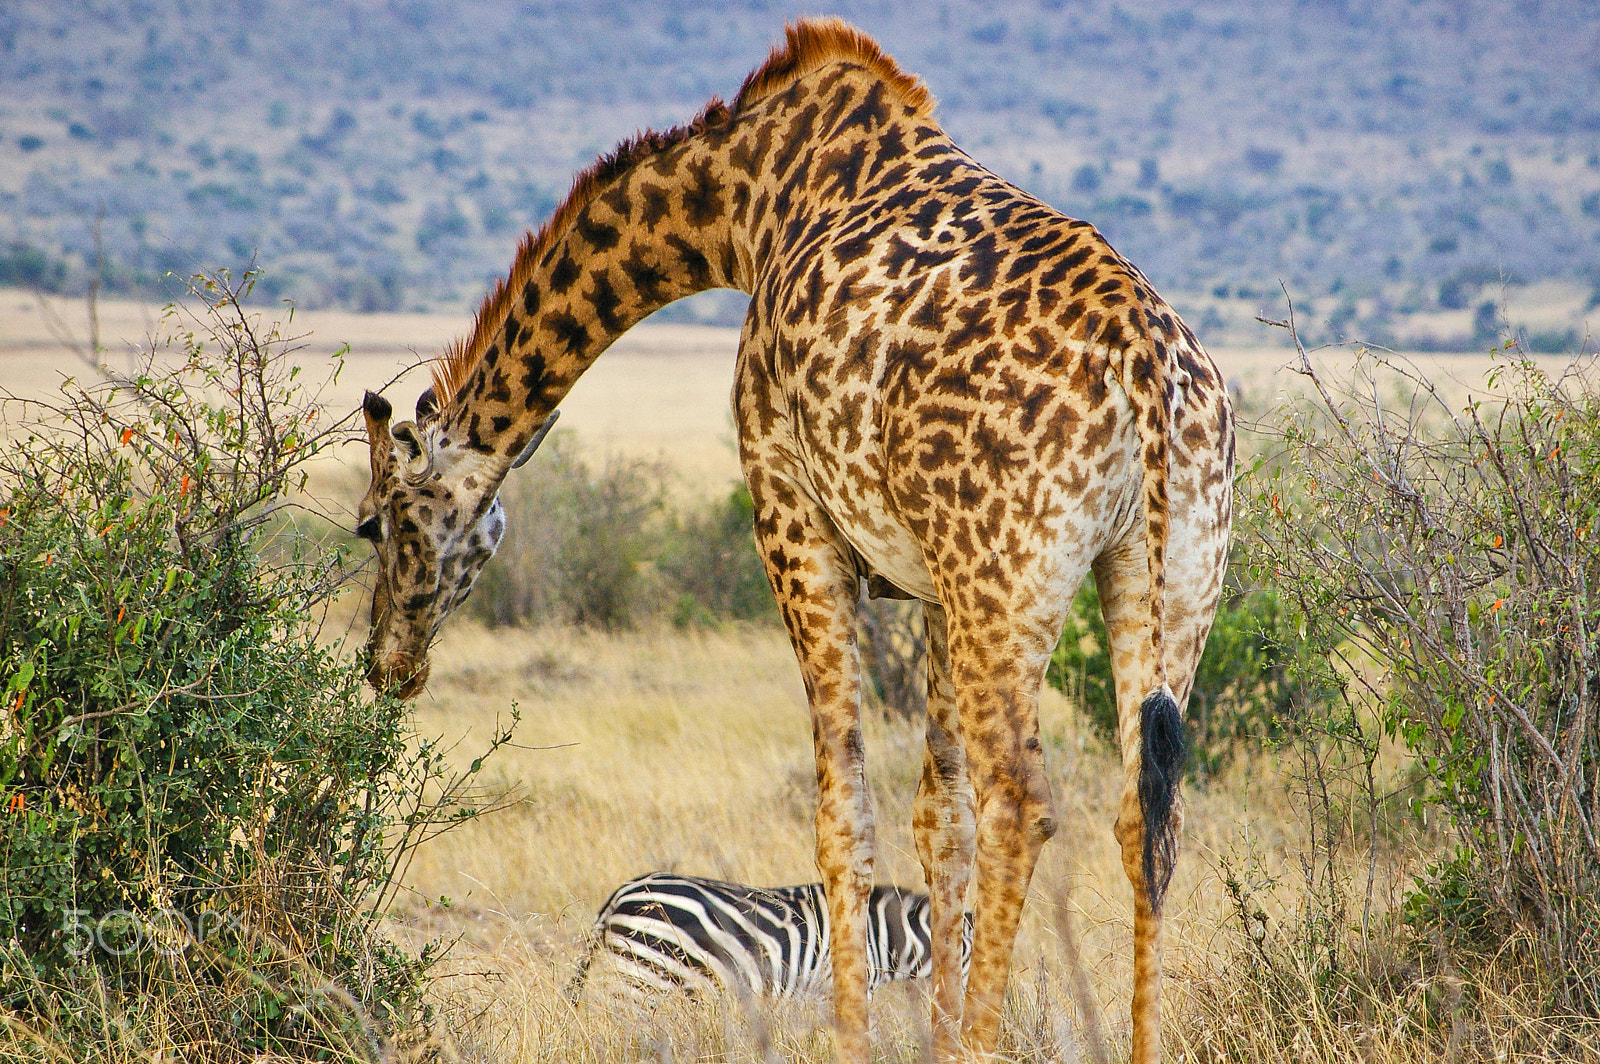 Pentax K100D + Pentax smc DA 50-200mm F4-5.6 ED sample photo. Giraffe and zebra in the maasai mara photography